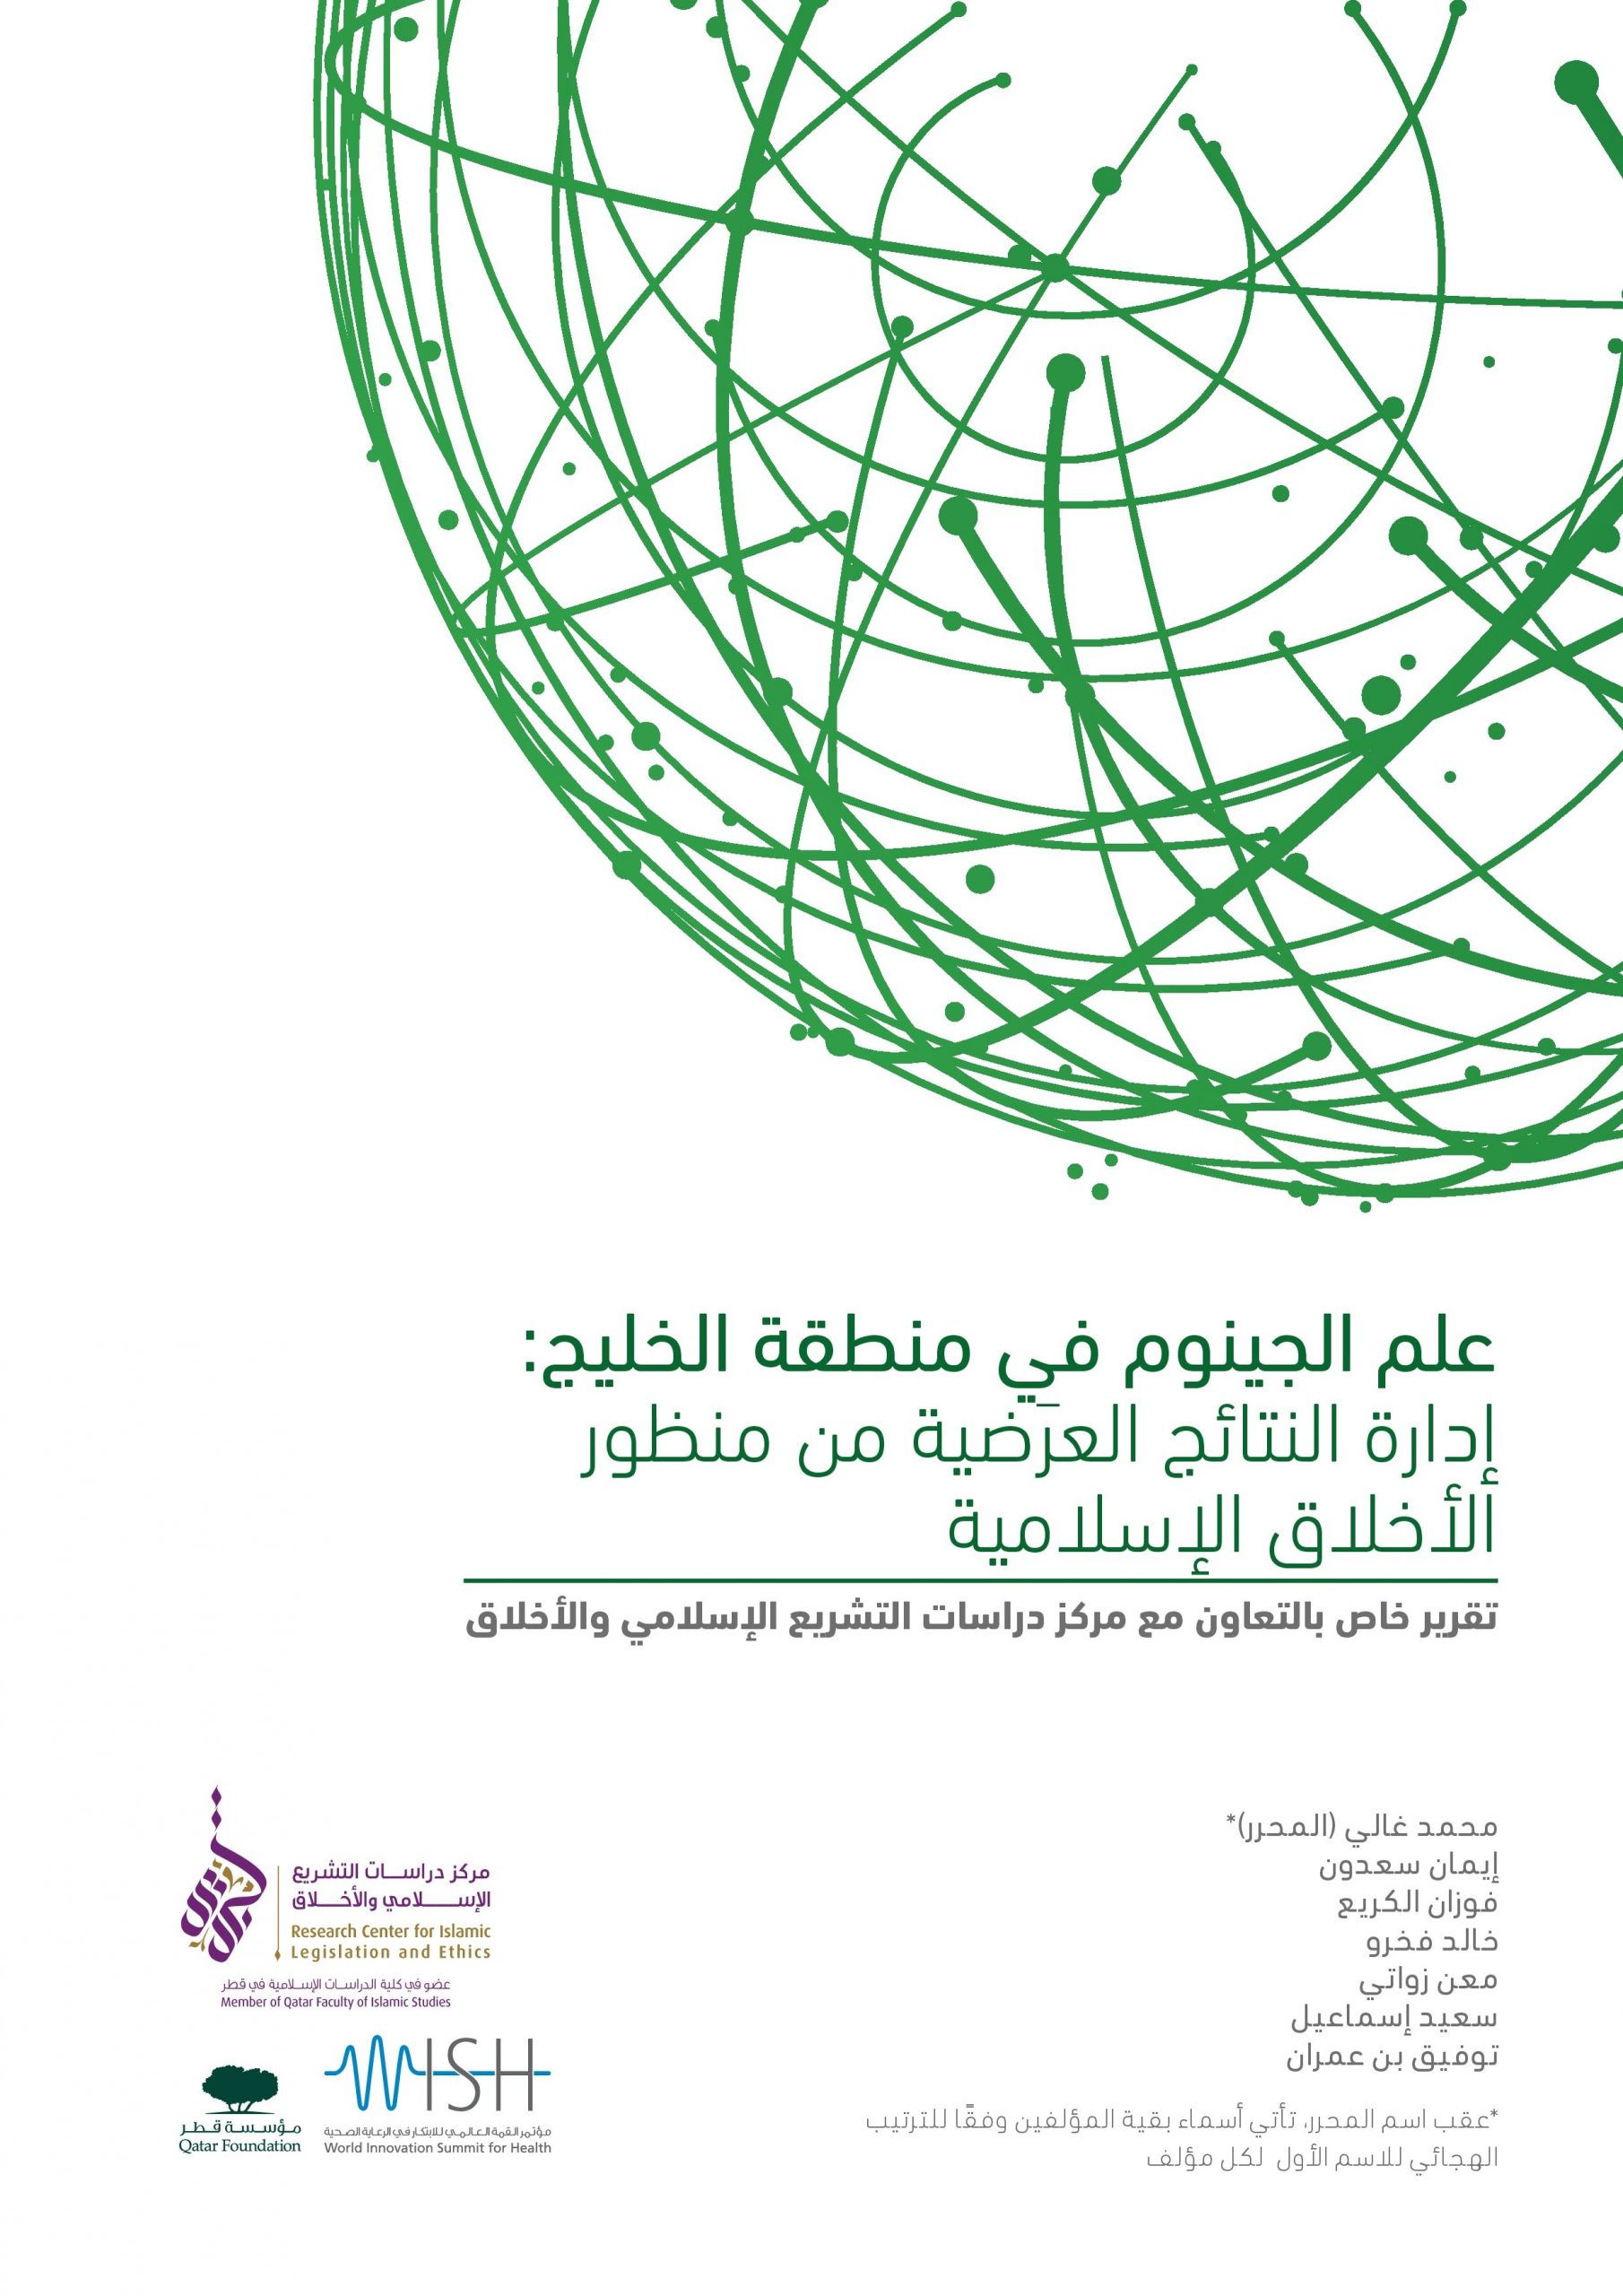 علم الجينوم في منطقة الخليج:  إدارة النتائج العرضية من منظور الأخلاق الإسلامية 